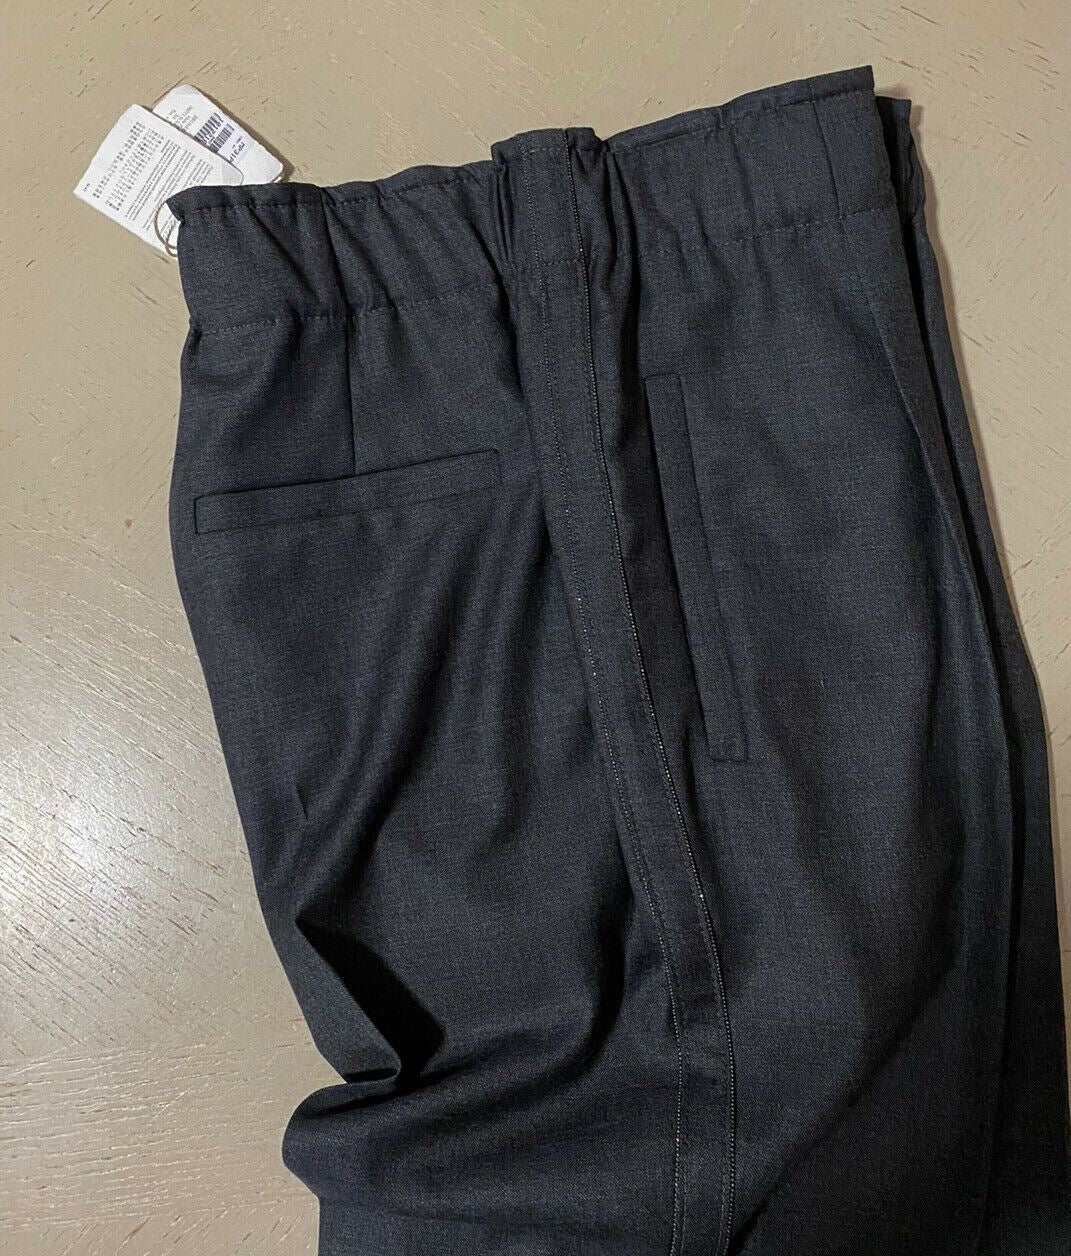 New $1495 Brunello Cucinelli Women Lightweight Wool Pants DK Gray 6 US/42 It